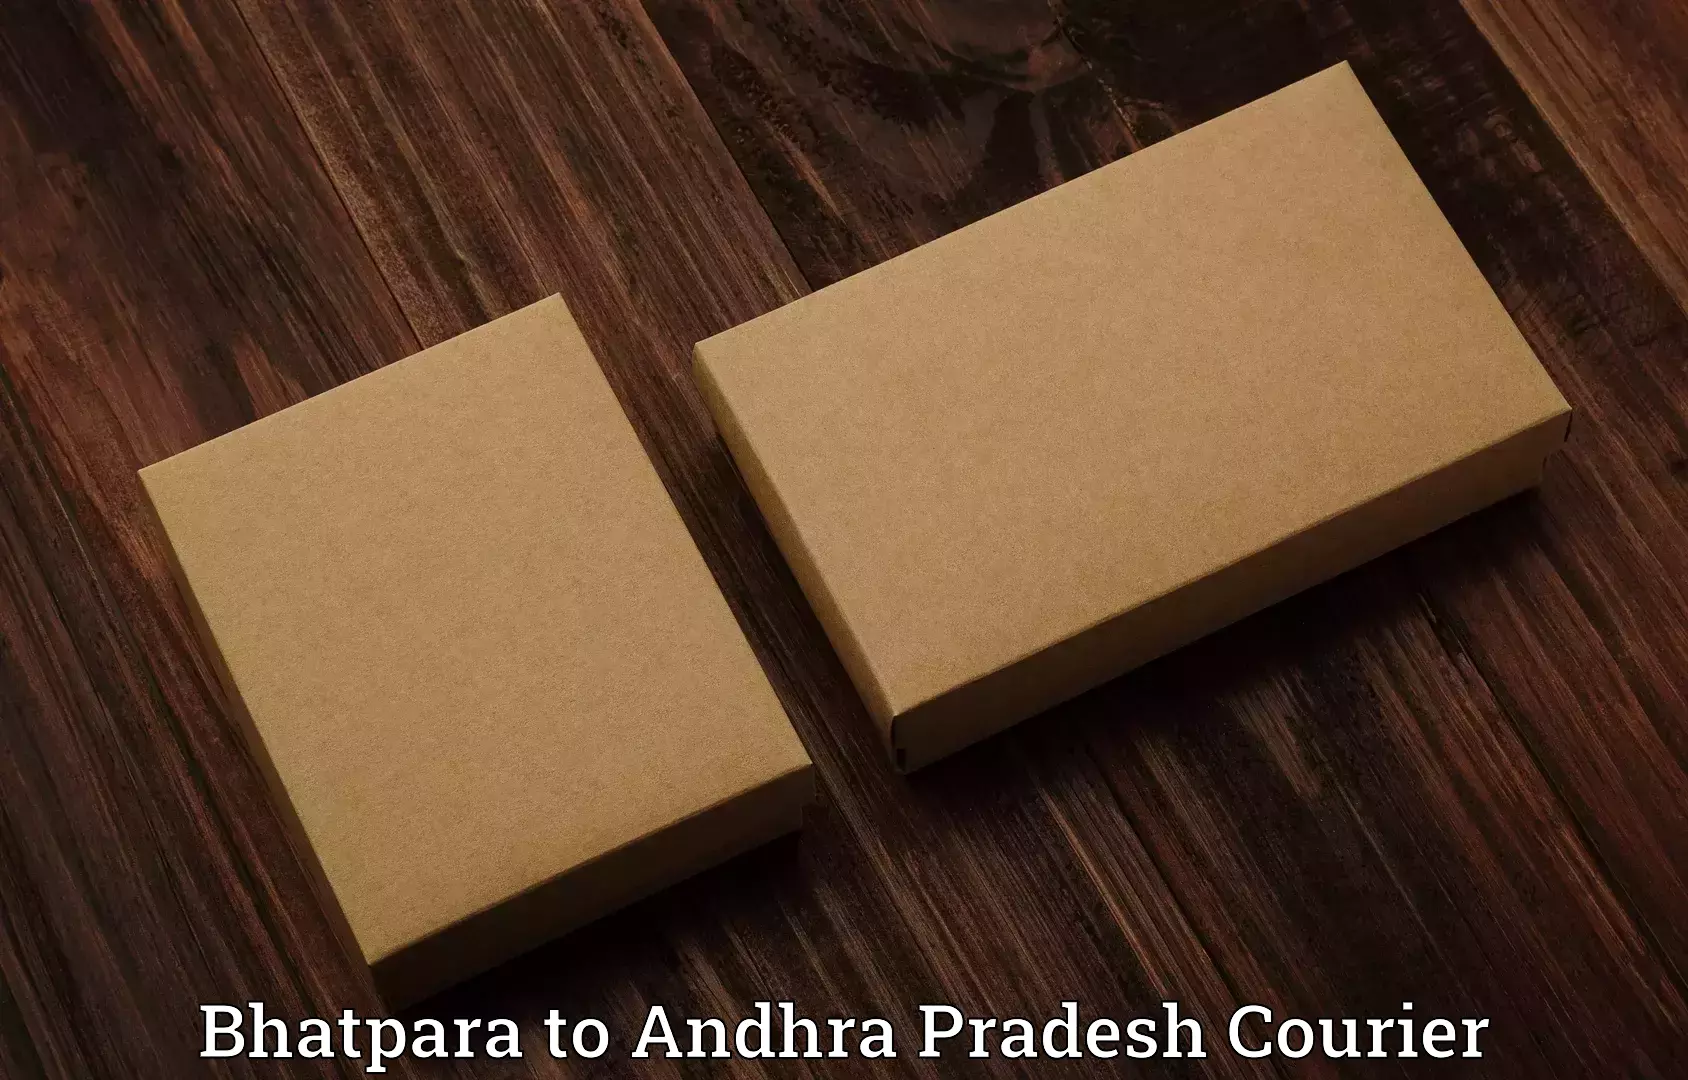 Luggage delivery optimization Bhatpara to East Godavari